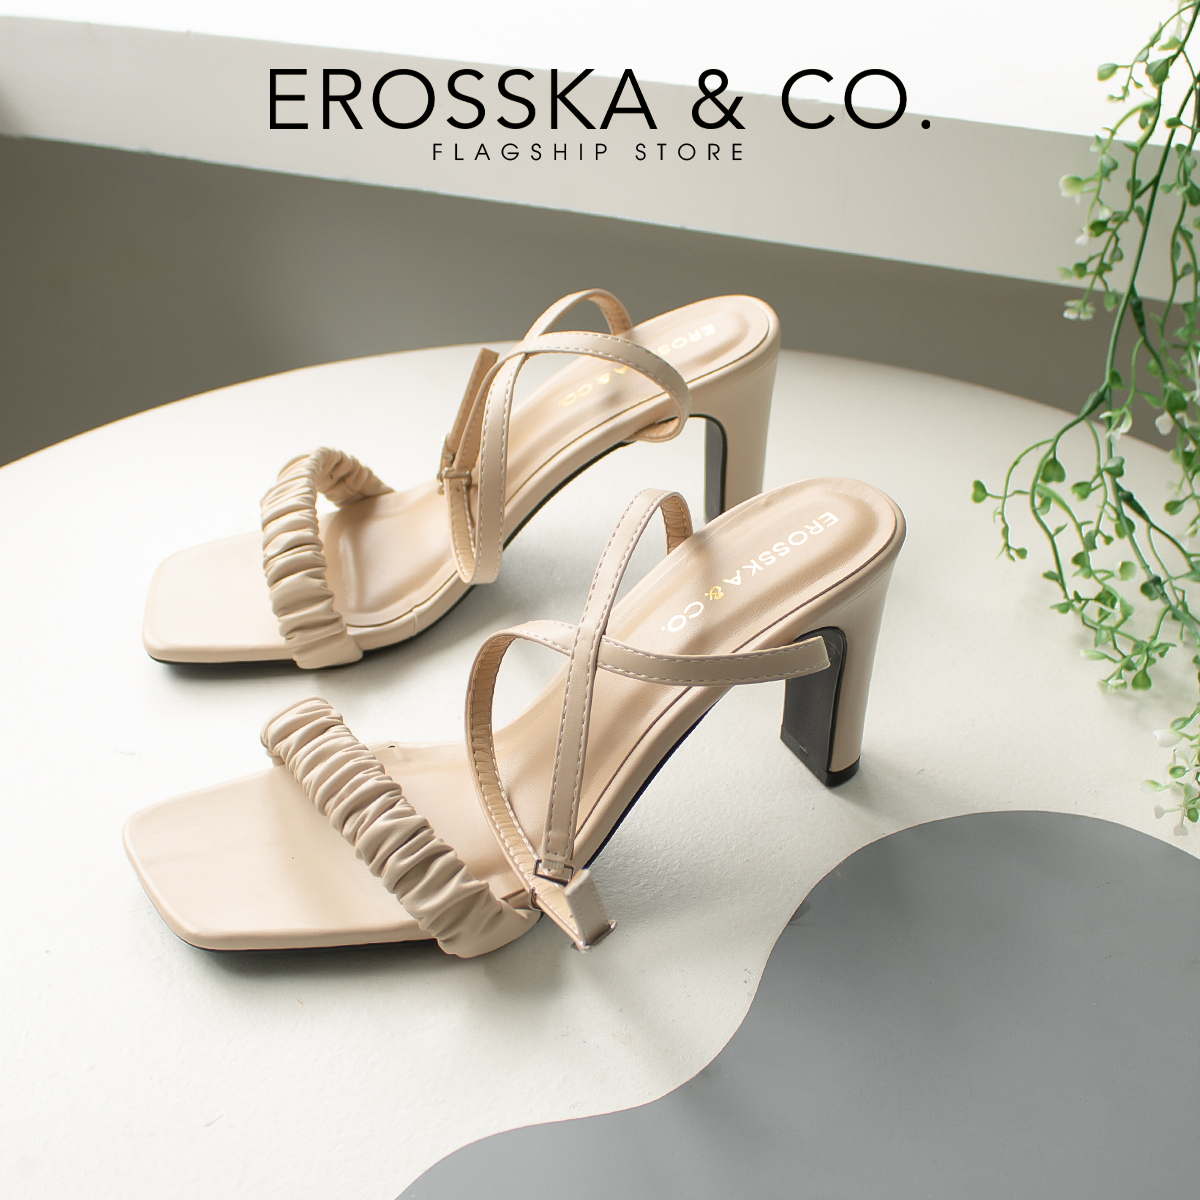 Erosska - Giày sandal cao gót nữ mũi vuông quai nhún cao 8cm màu đen - EB044